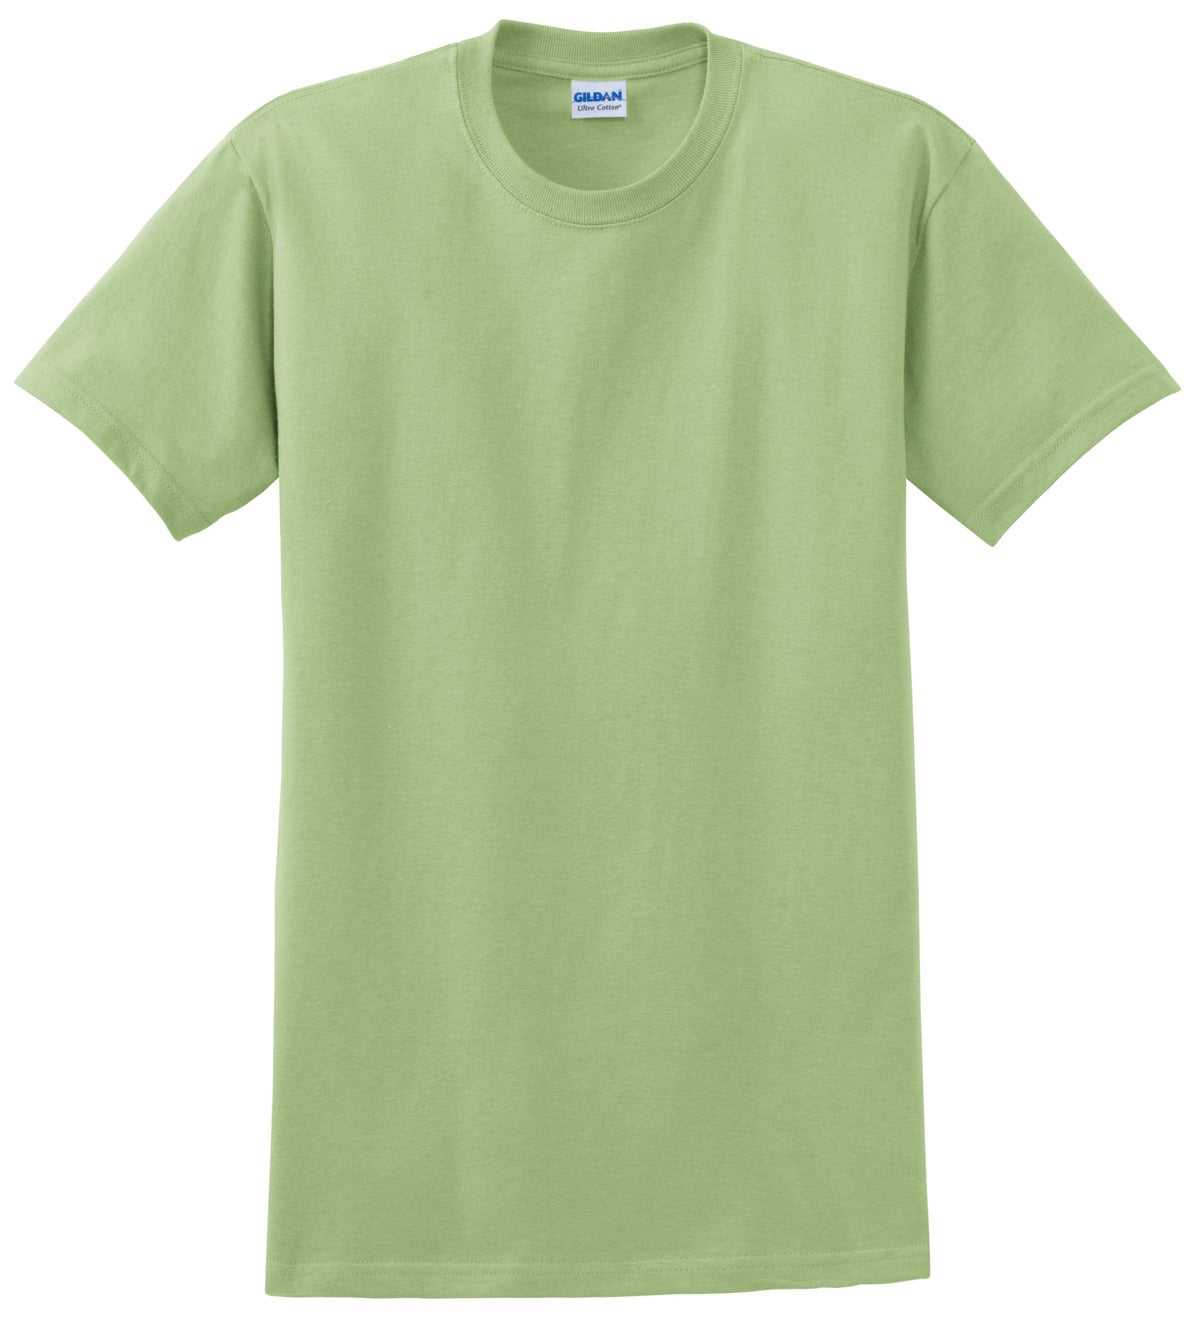 Gildan 2000 Ultra Cotton 100% Cotton T-Shirt - Pistachio - HIT a Double